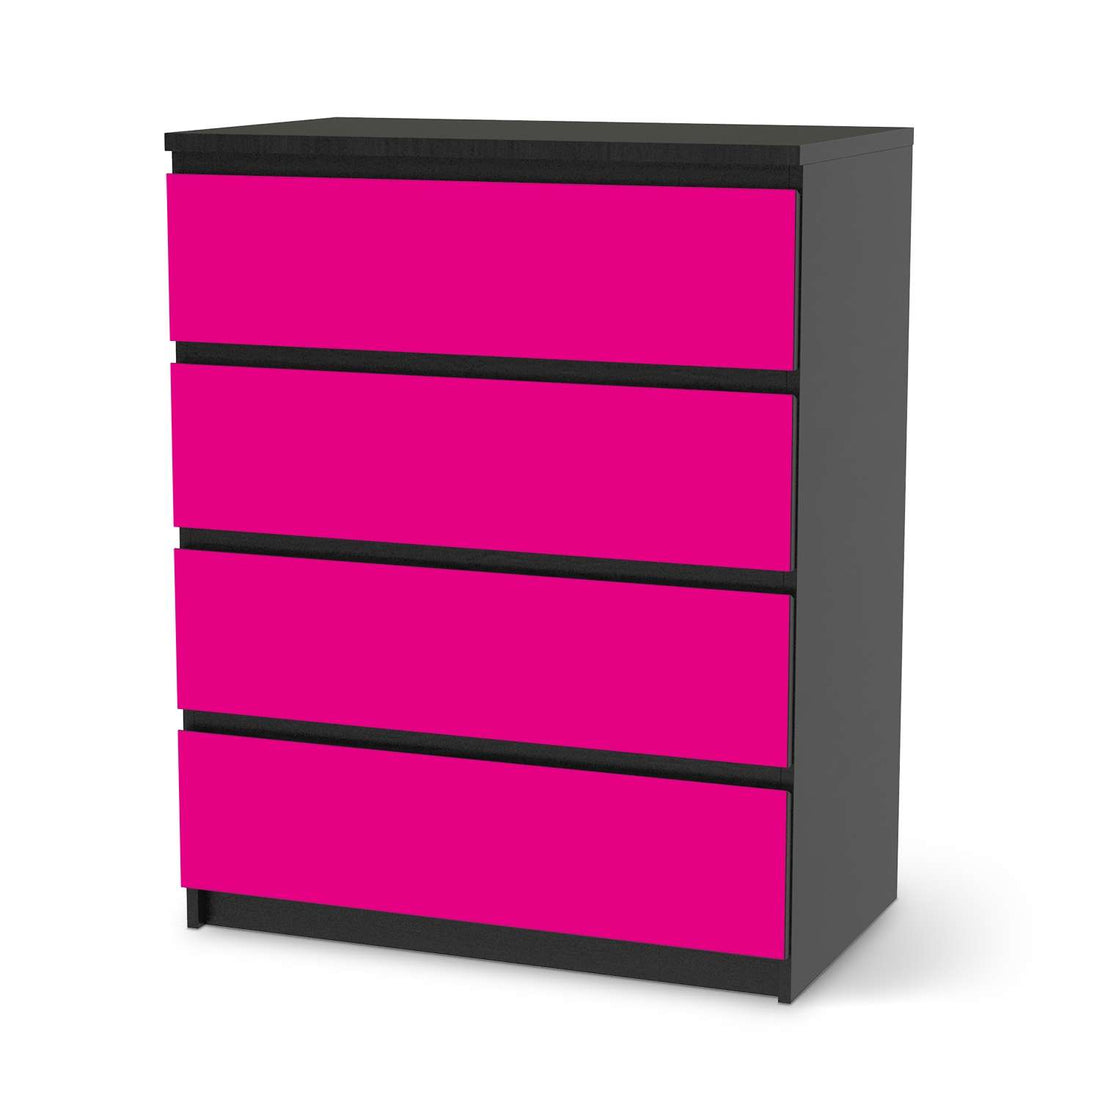 Folie für Möbel Pink Dark - IKEA Malm Kommode 4 Schubladen - schwarz